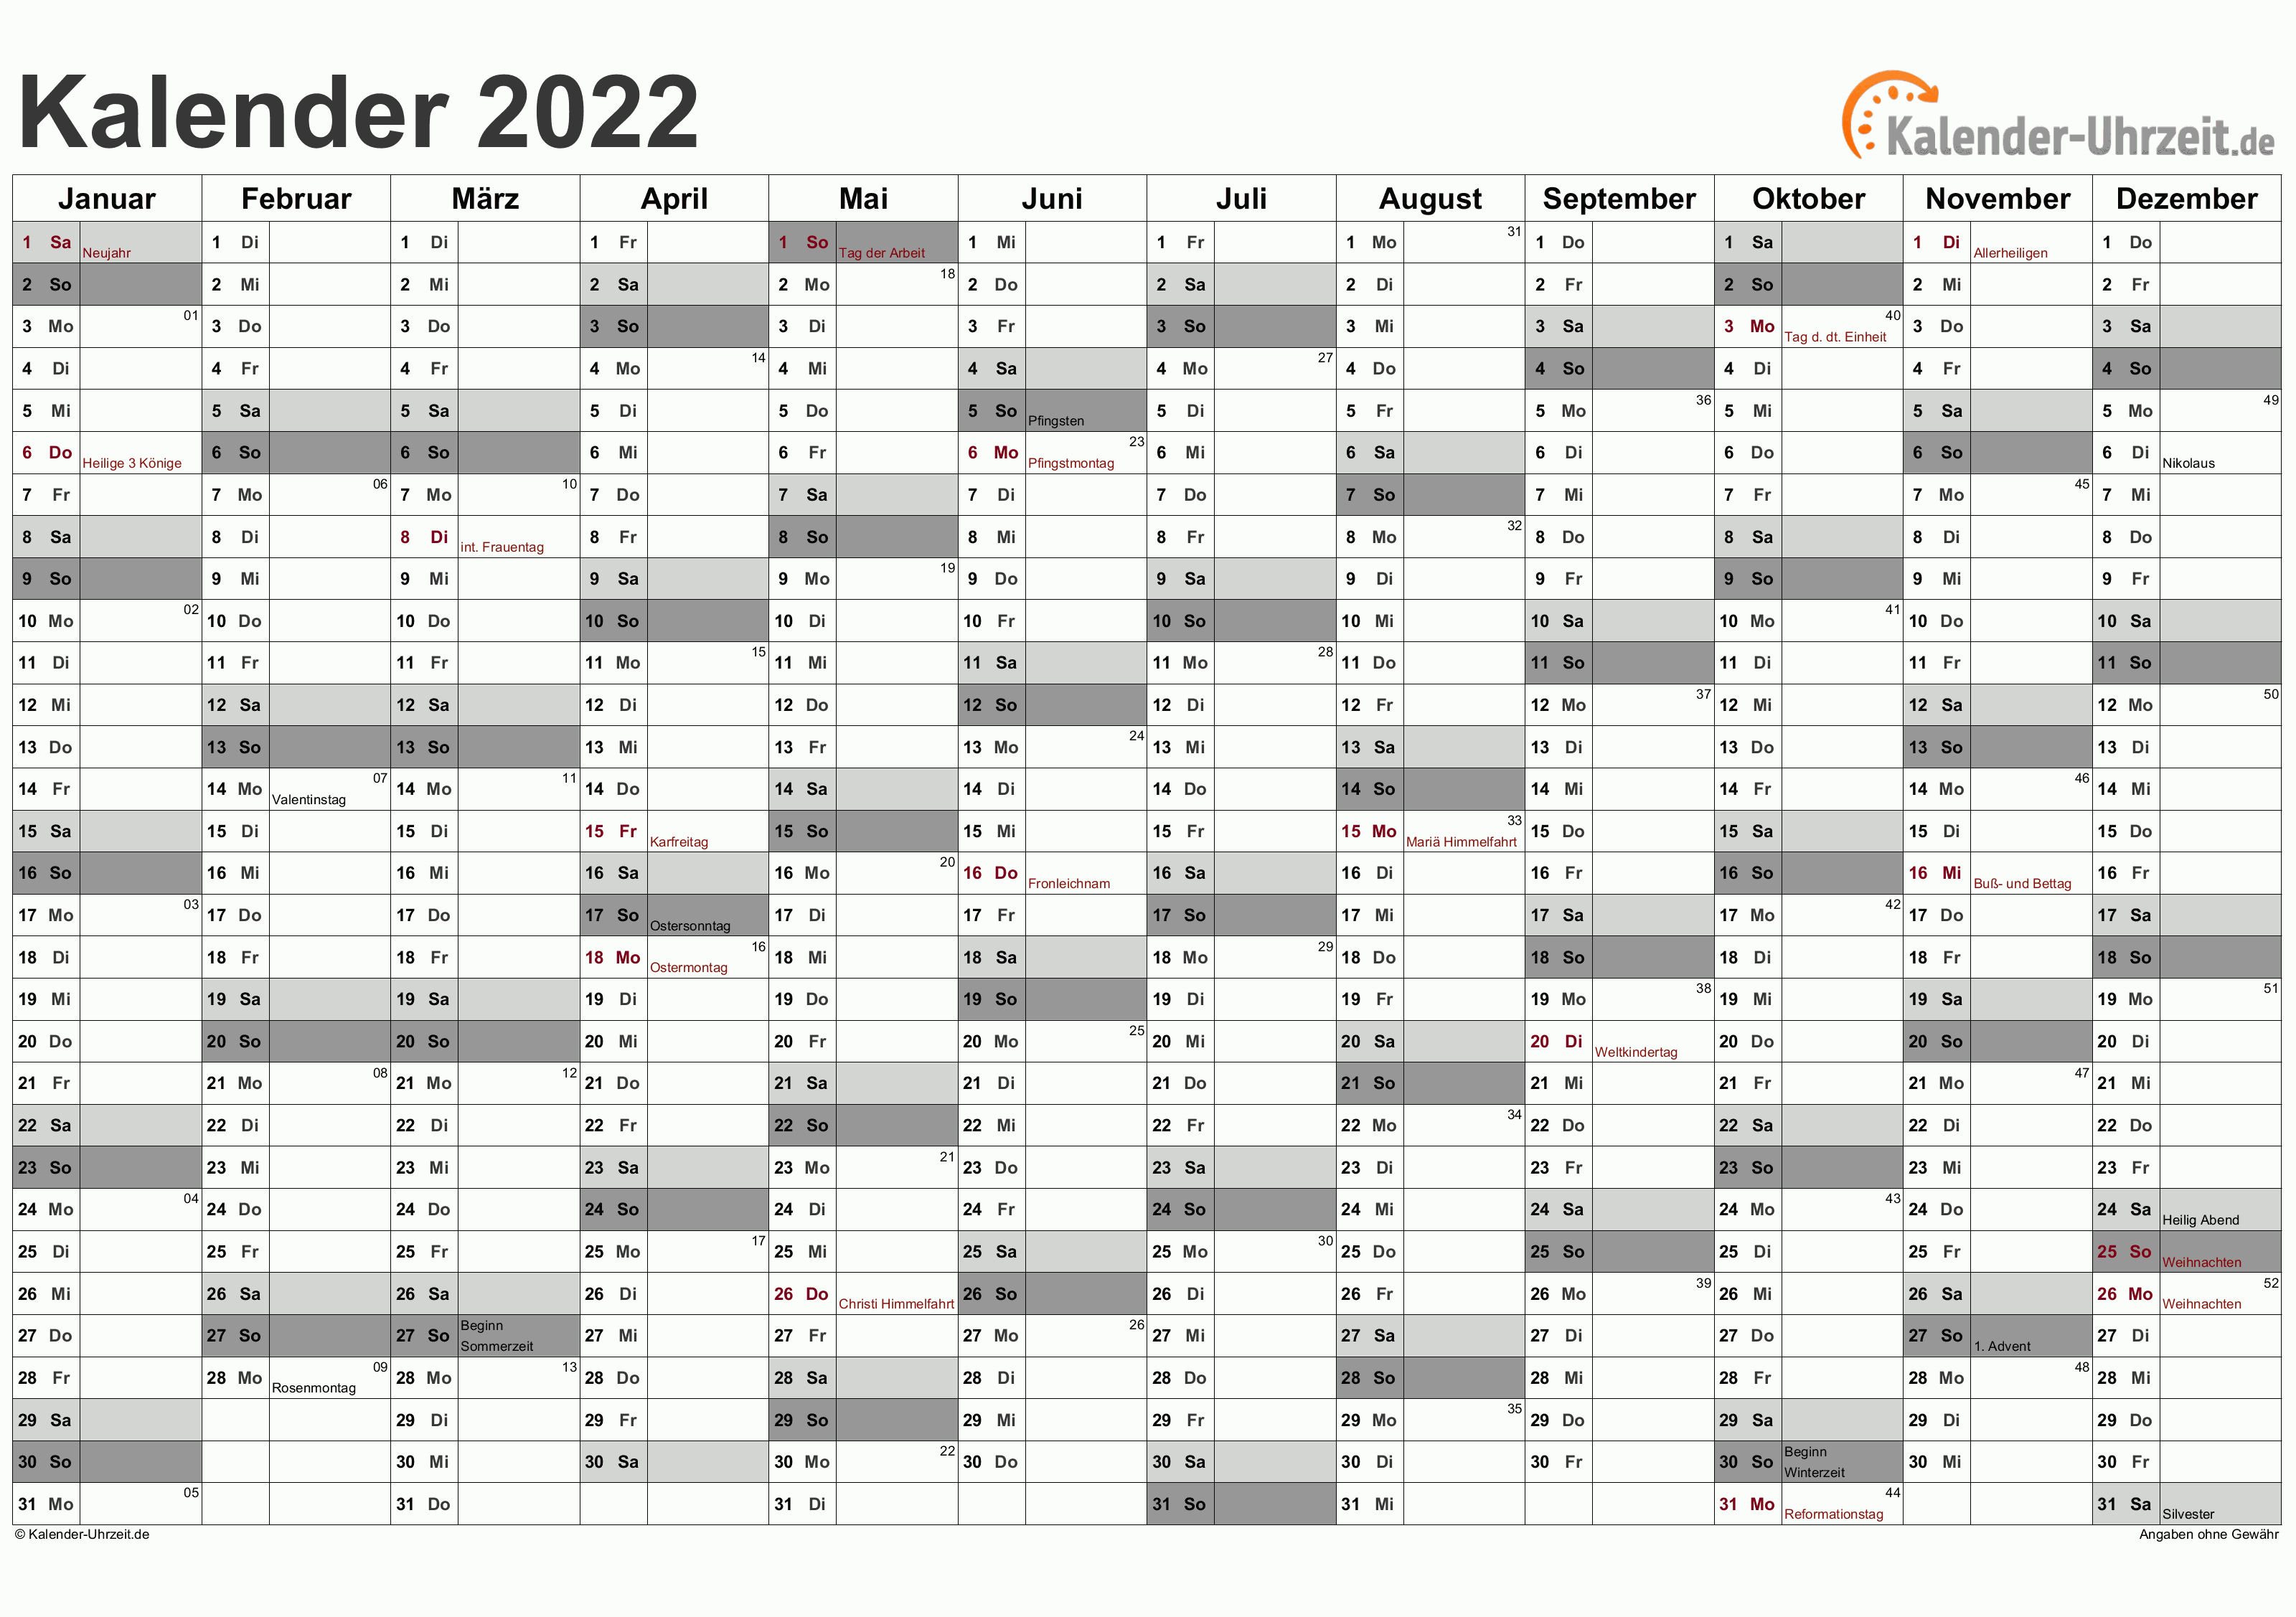 EXCEL KALENDER 2022 KOSTENLOS. www.kalender-uhrzeit.de. 